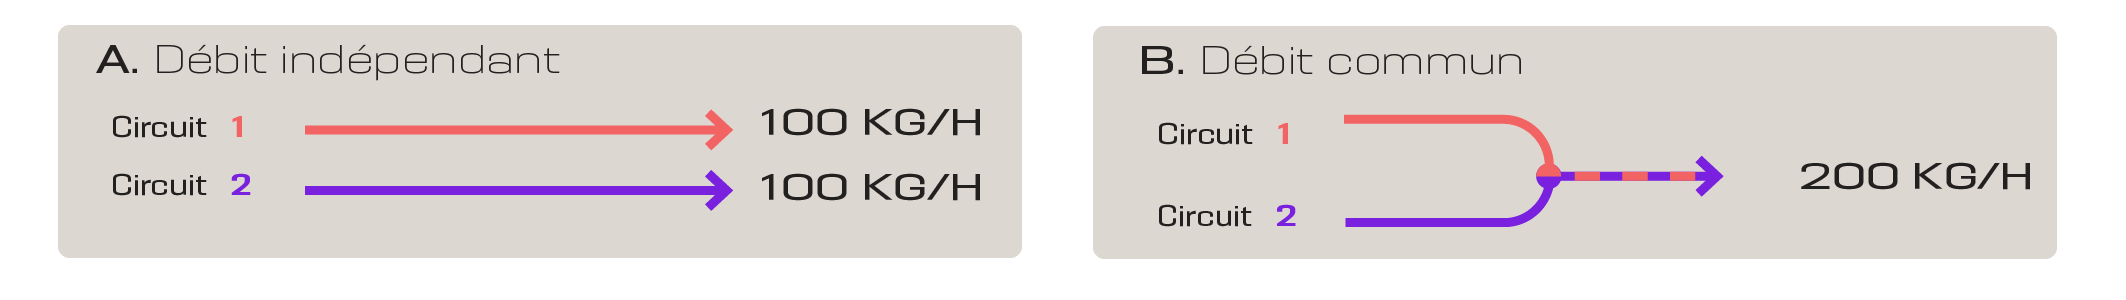 Le passage d'un circuit à deux circuits se fait par un simple réglage mécanique que n'importe quel responsable de ligne peut effectuer en quelques gestes.